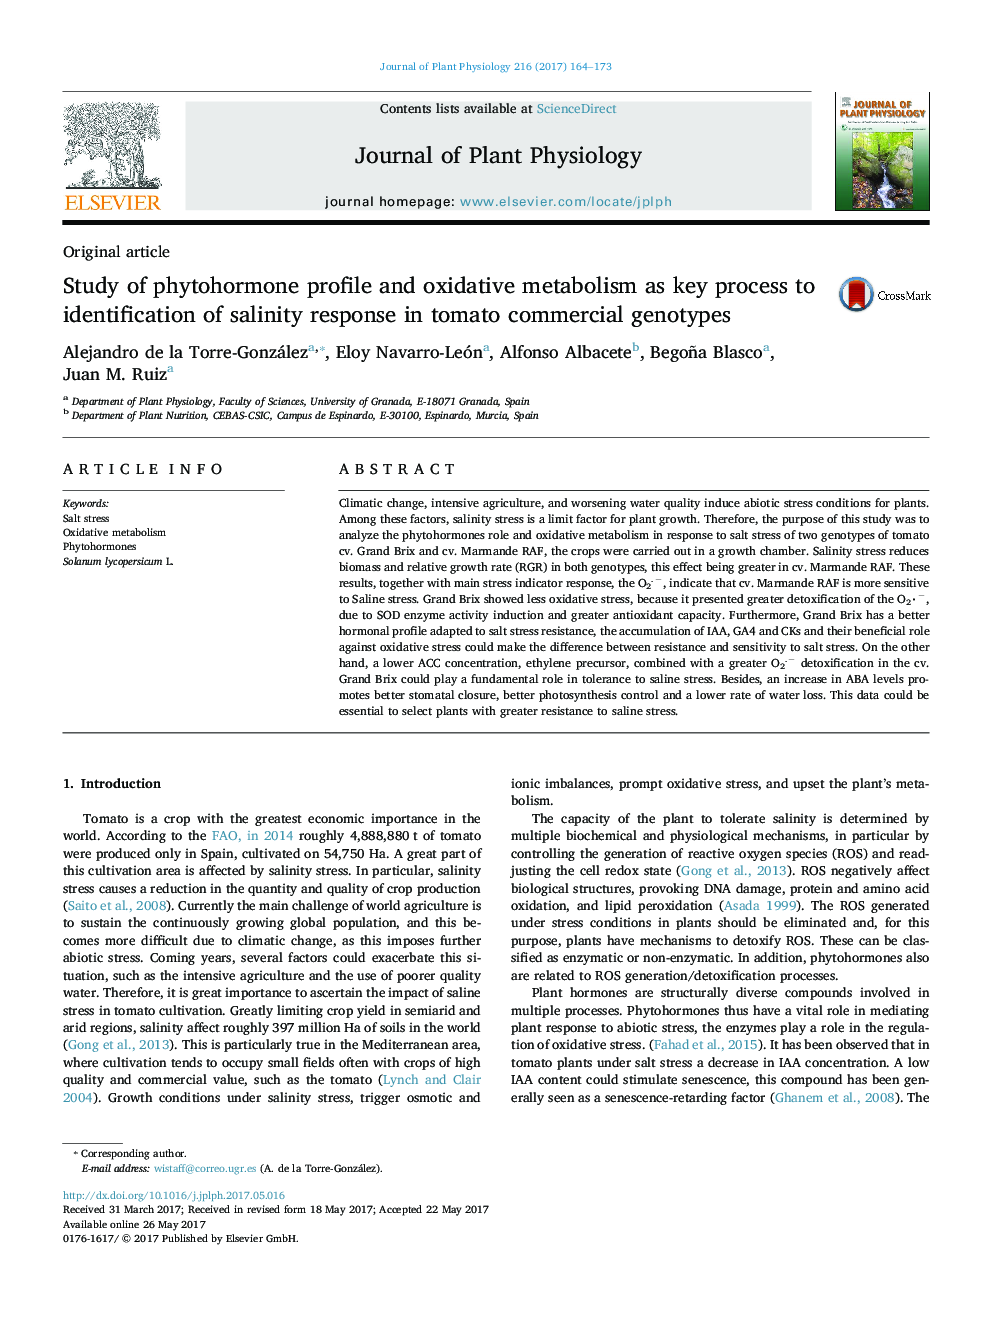 مقاله اصلی بررسی مشخصات فیتوهورمون و متابولیسم اکسیداتیو به عنوان فرایند کلیدی برای شناسایی پاسخ شوری در ژنوتایپ های تجاری گوجه فرنگی 